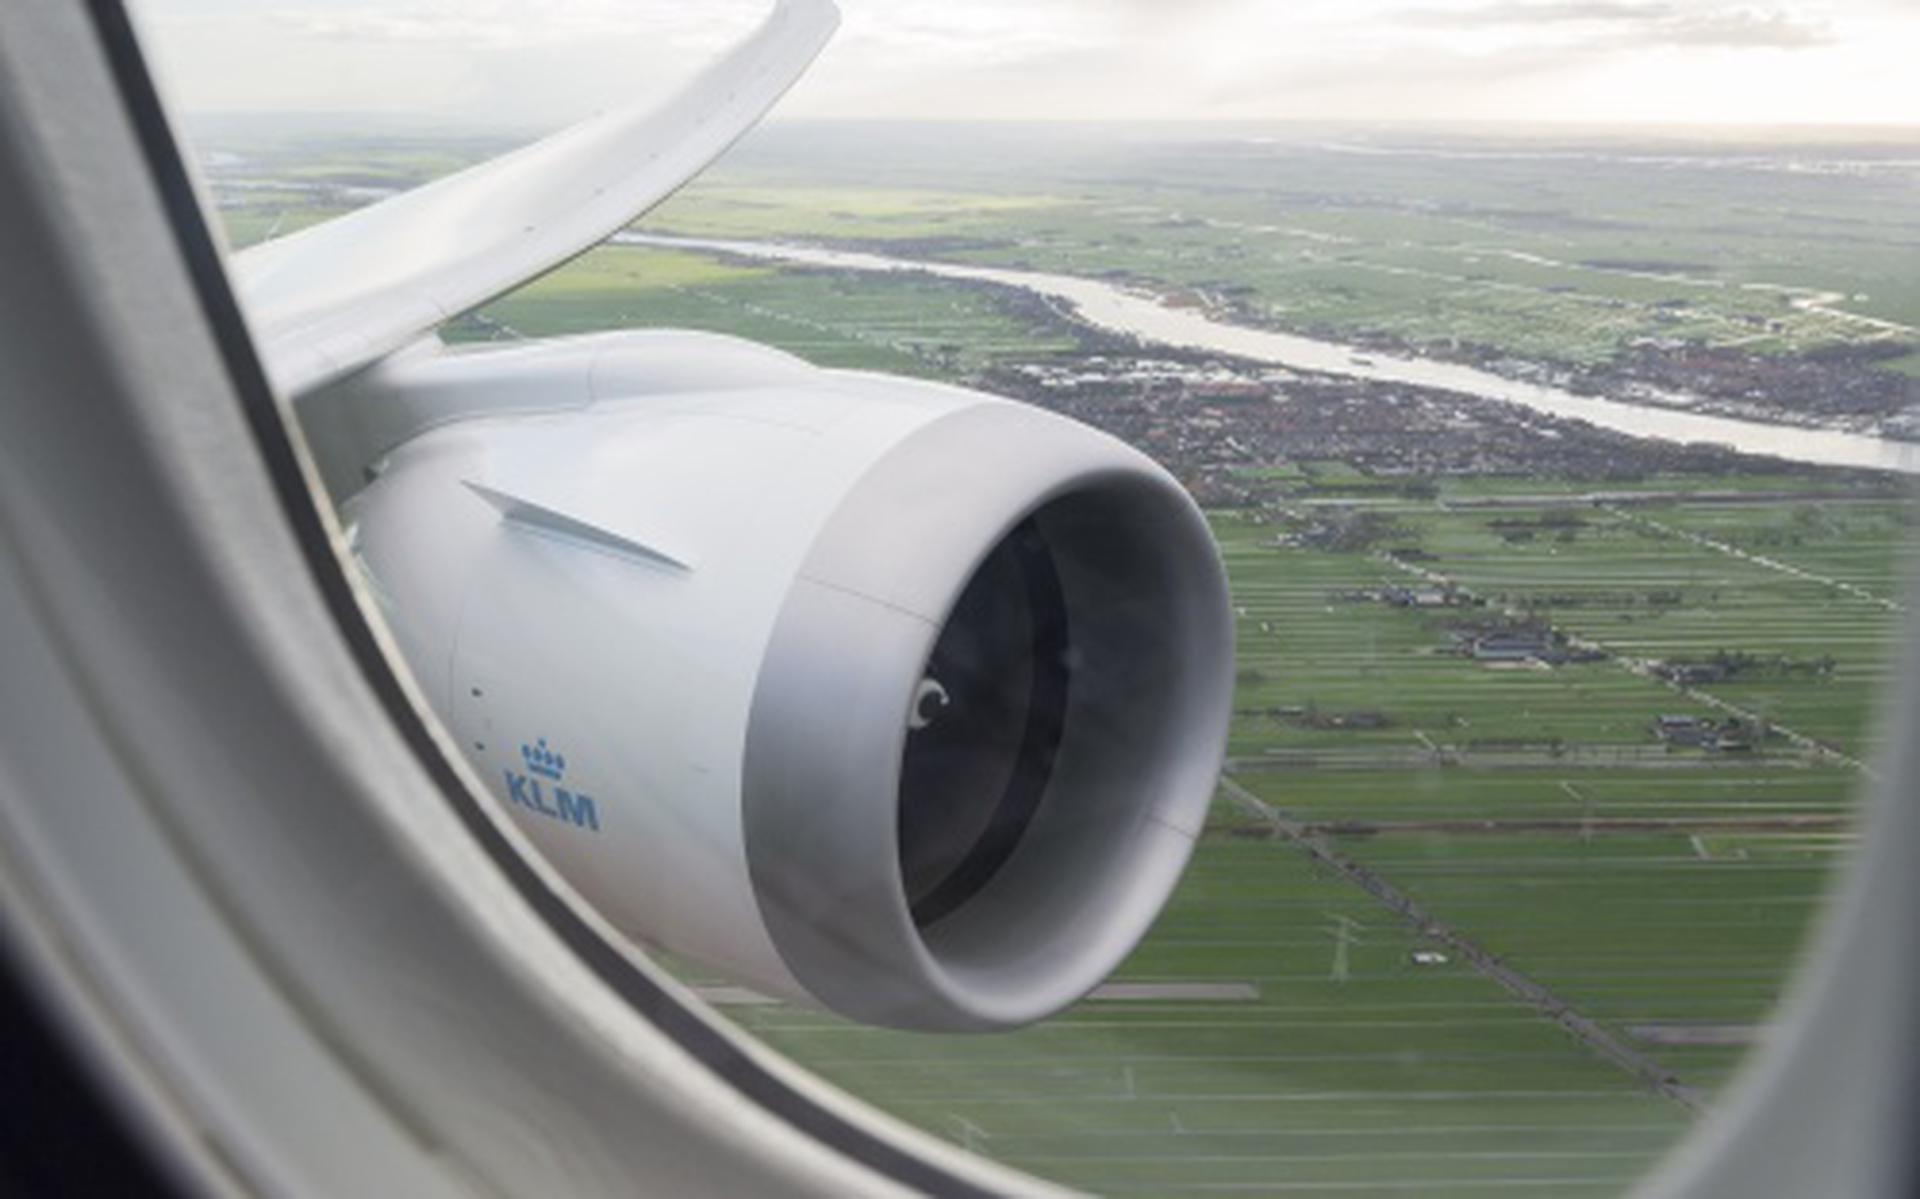 'Passagier wil deur openen op KLM-vlucht'